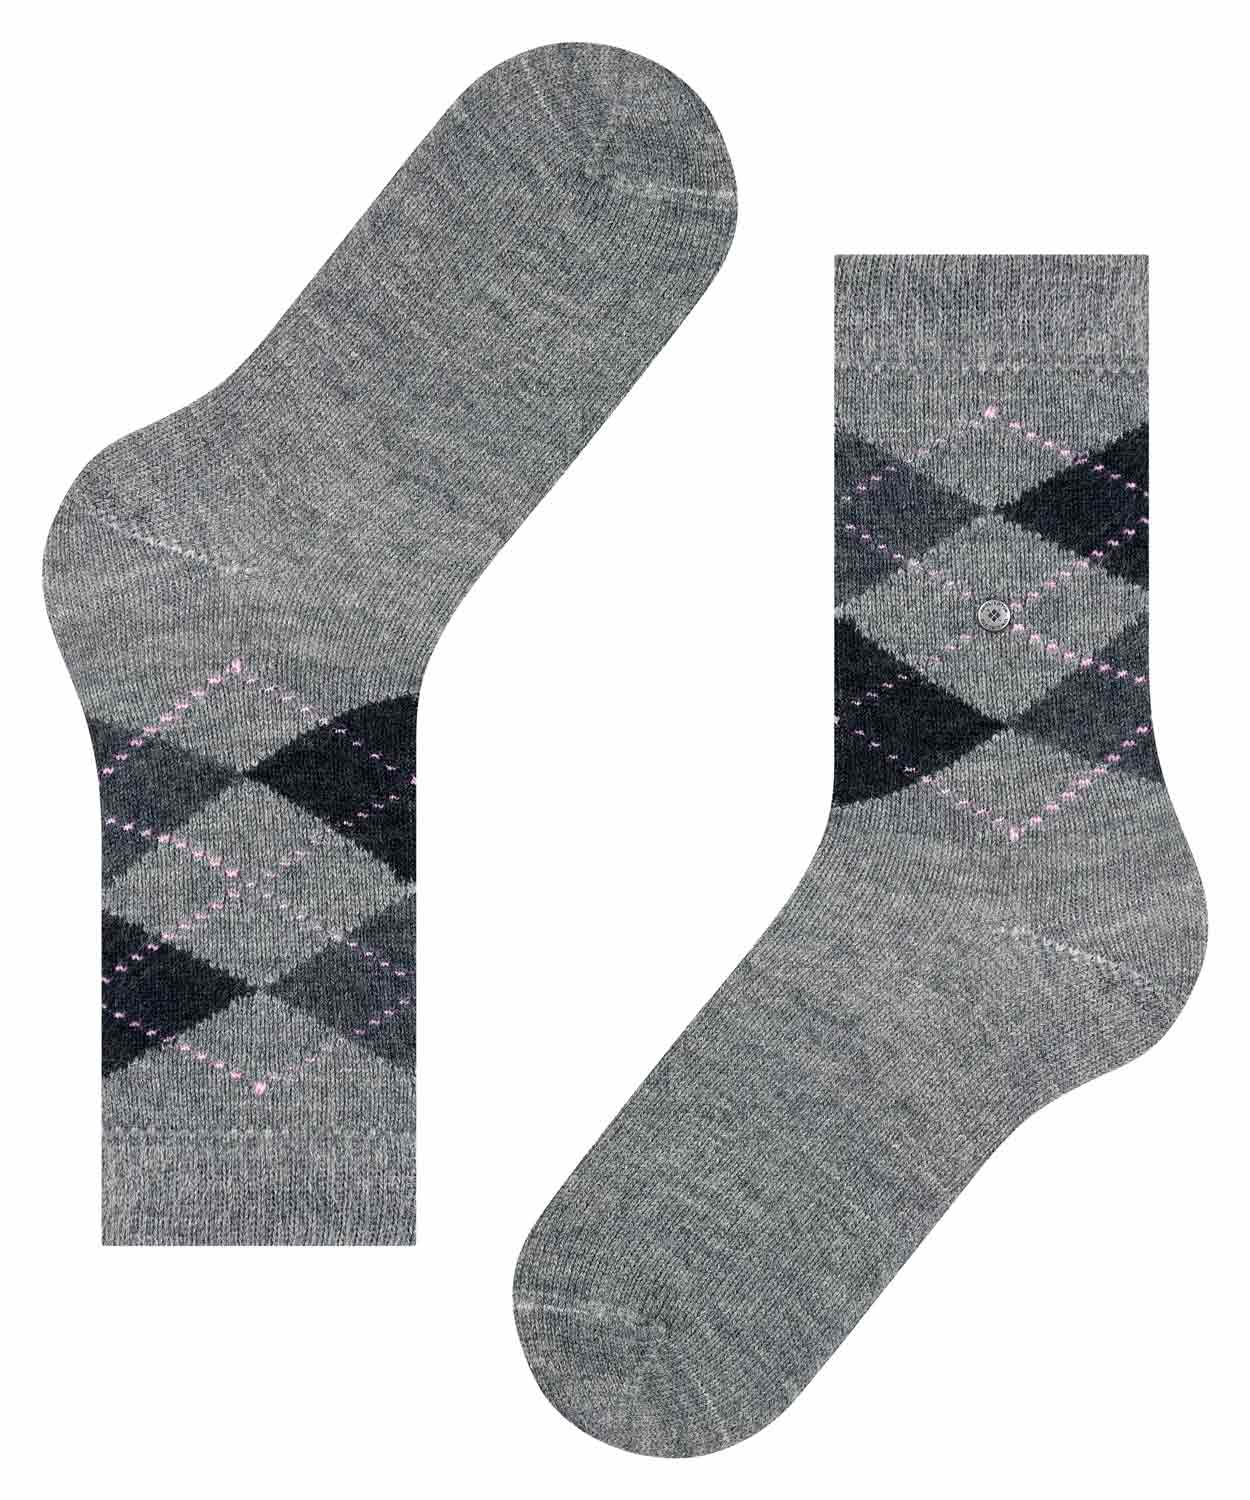 Socks - Whitby